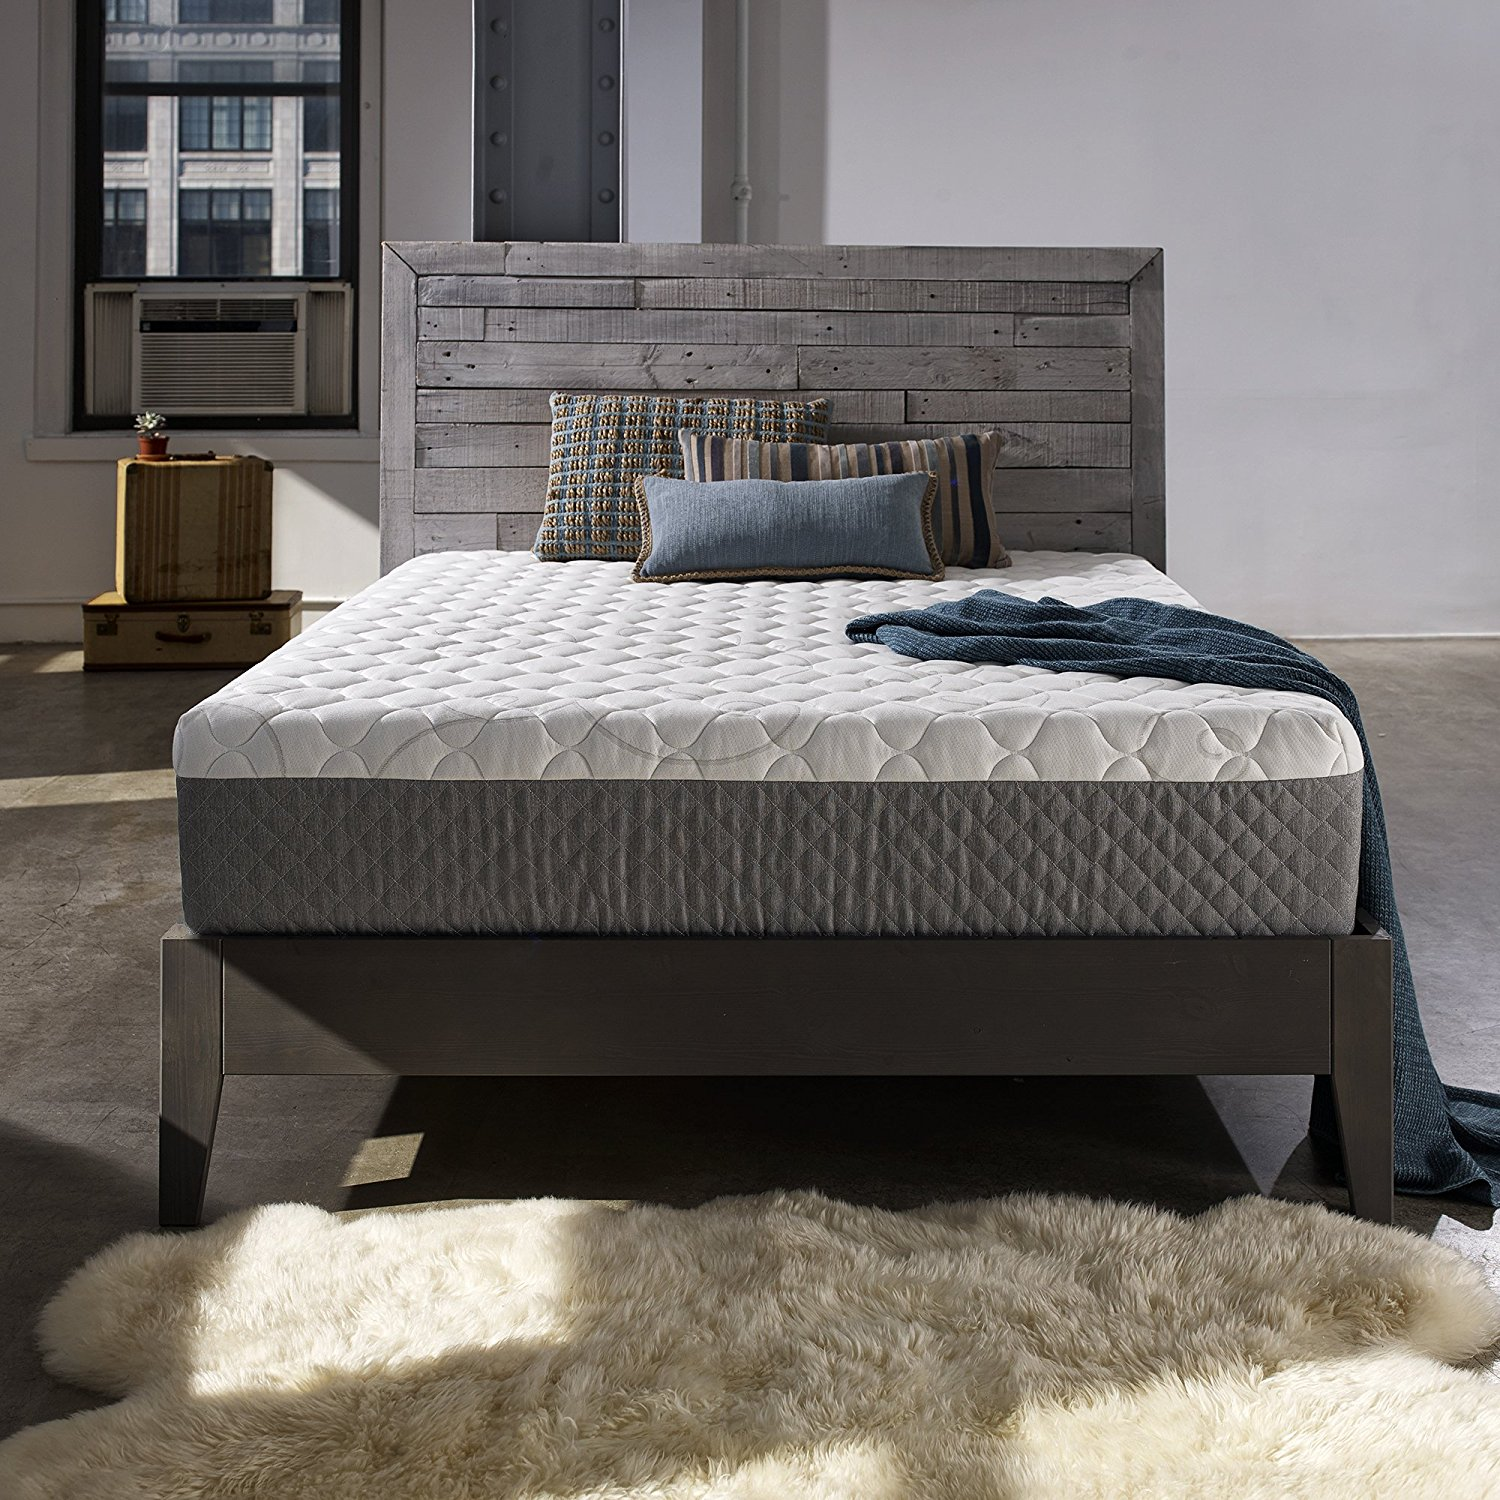 Як вибрати матрац для двоспального ліжка? Огляд брендів, технологій і наповнювачів